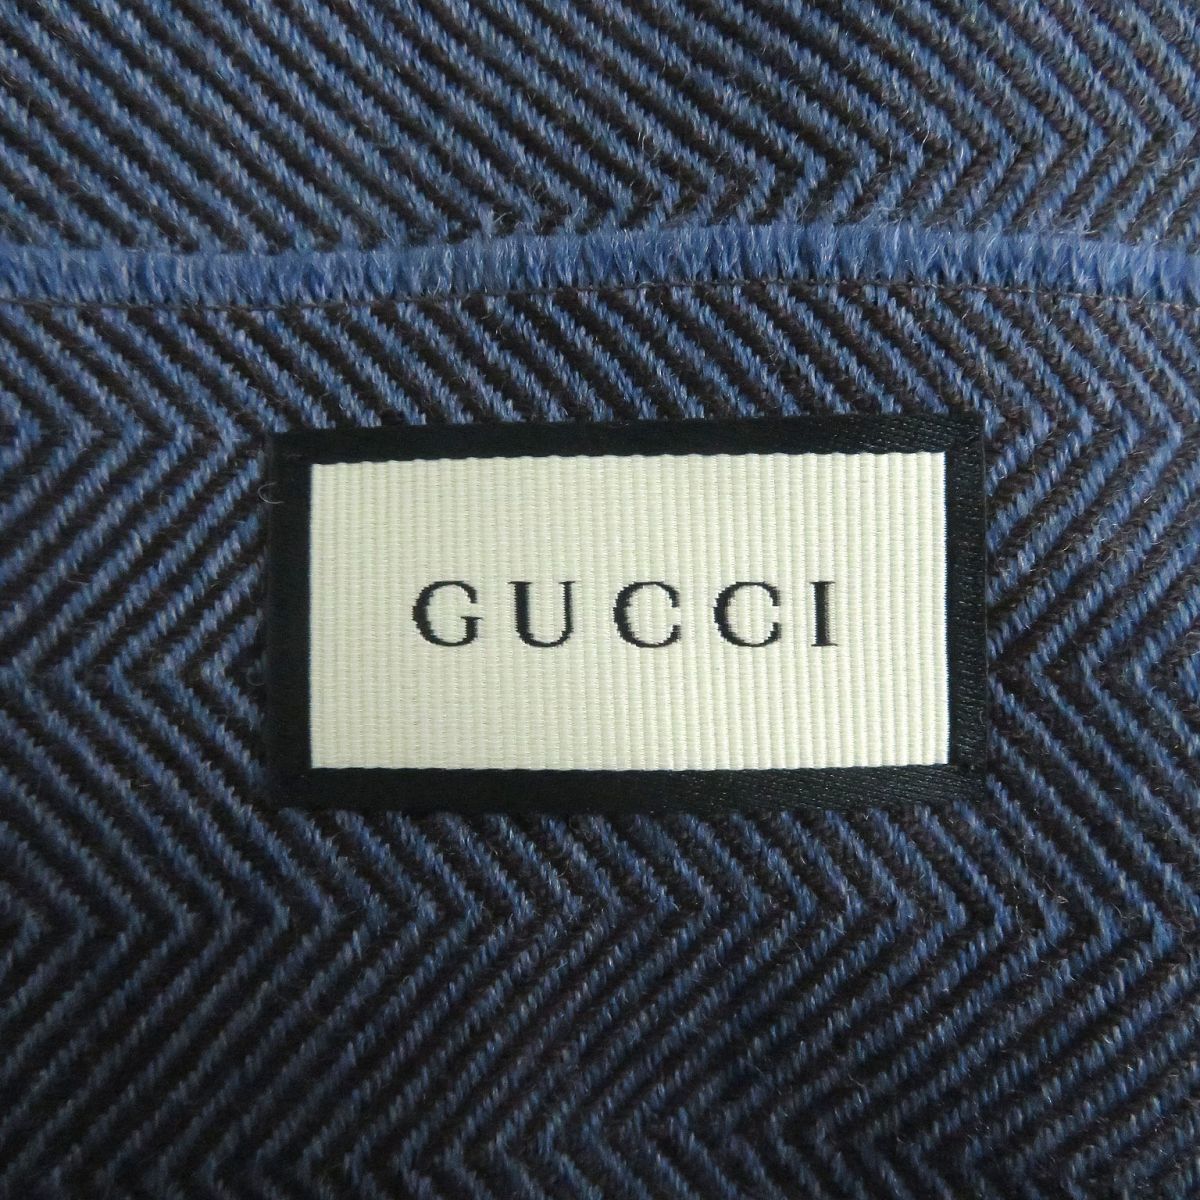  не использовался товар *GUCCI/ Gucci 344993k rest Logo "в елочку" рисунок шерсть 100% бахрома muffler / шаль голубой 40×180cm Италия производства стандартный товар 